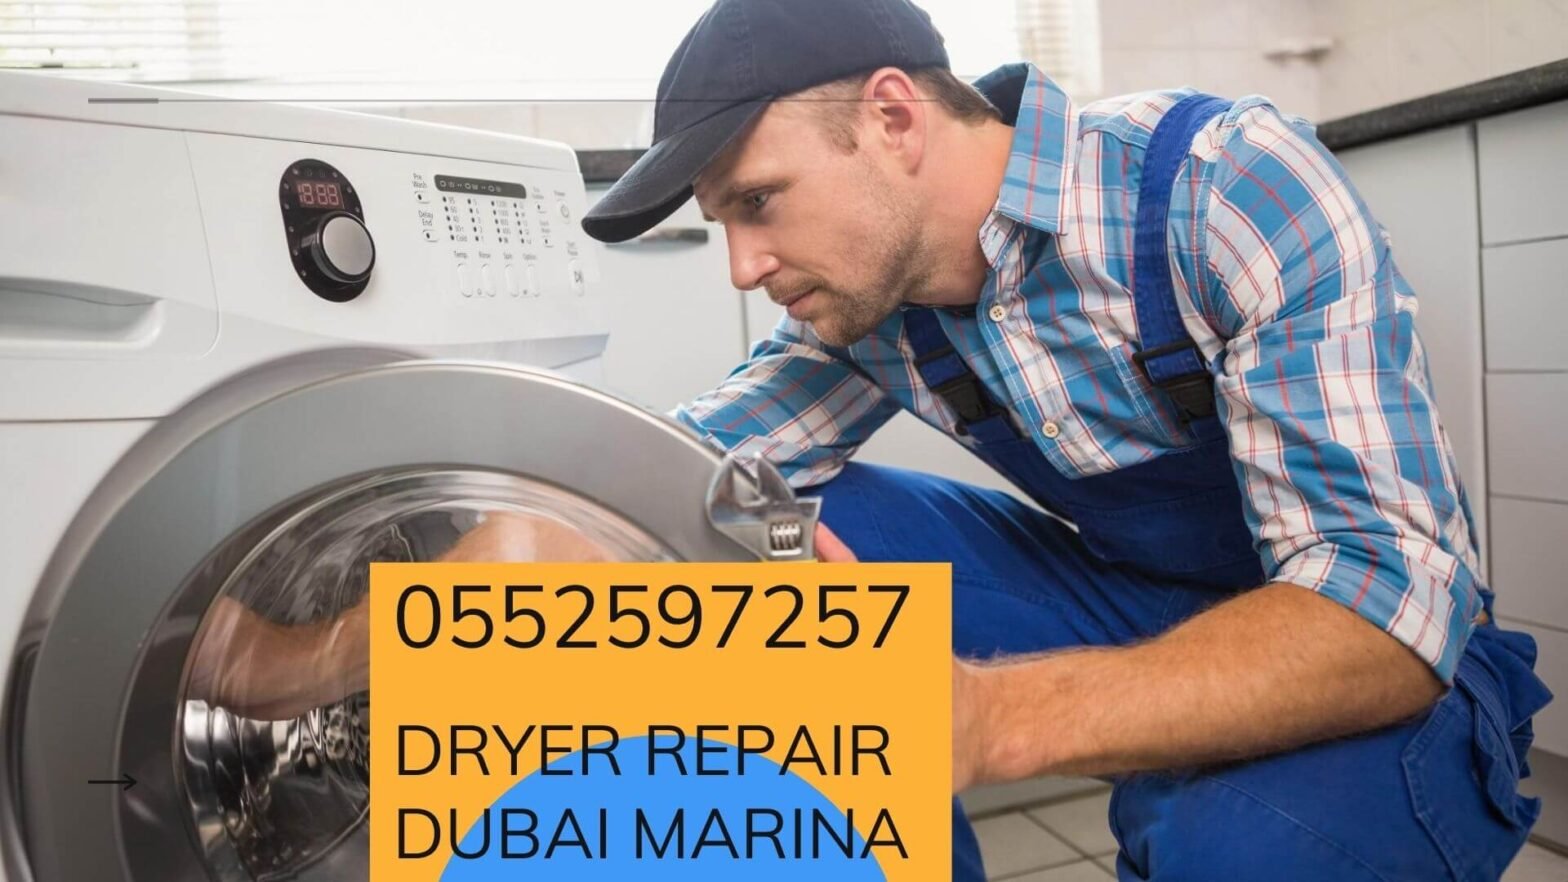 Dryer repair Dubai marina